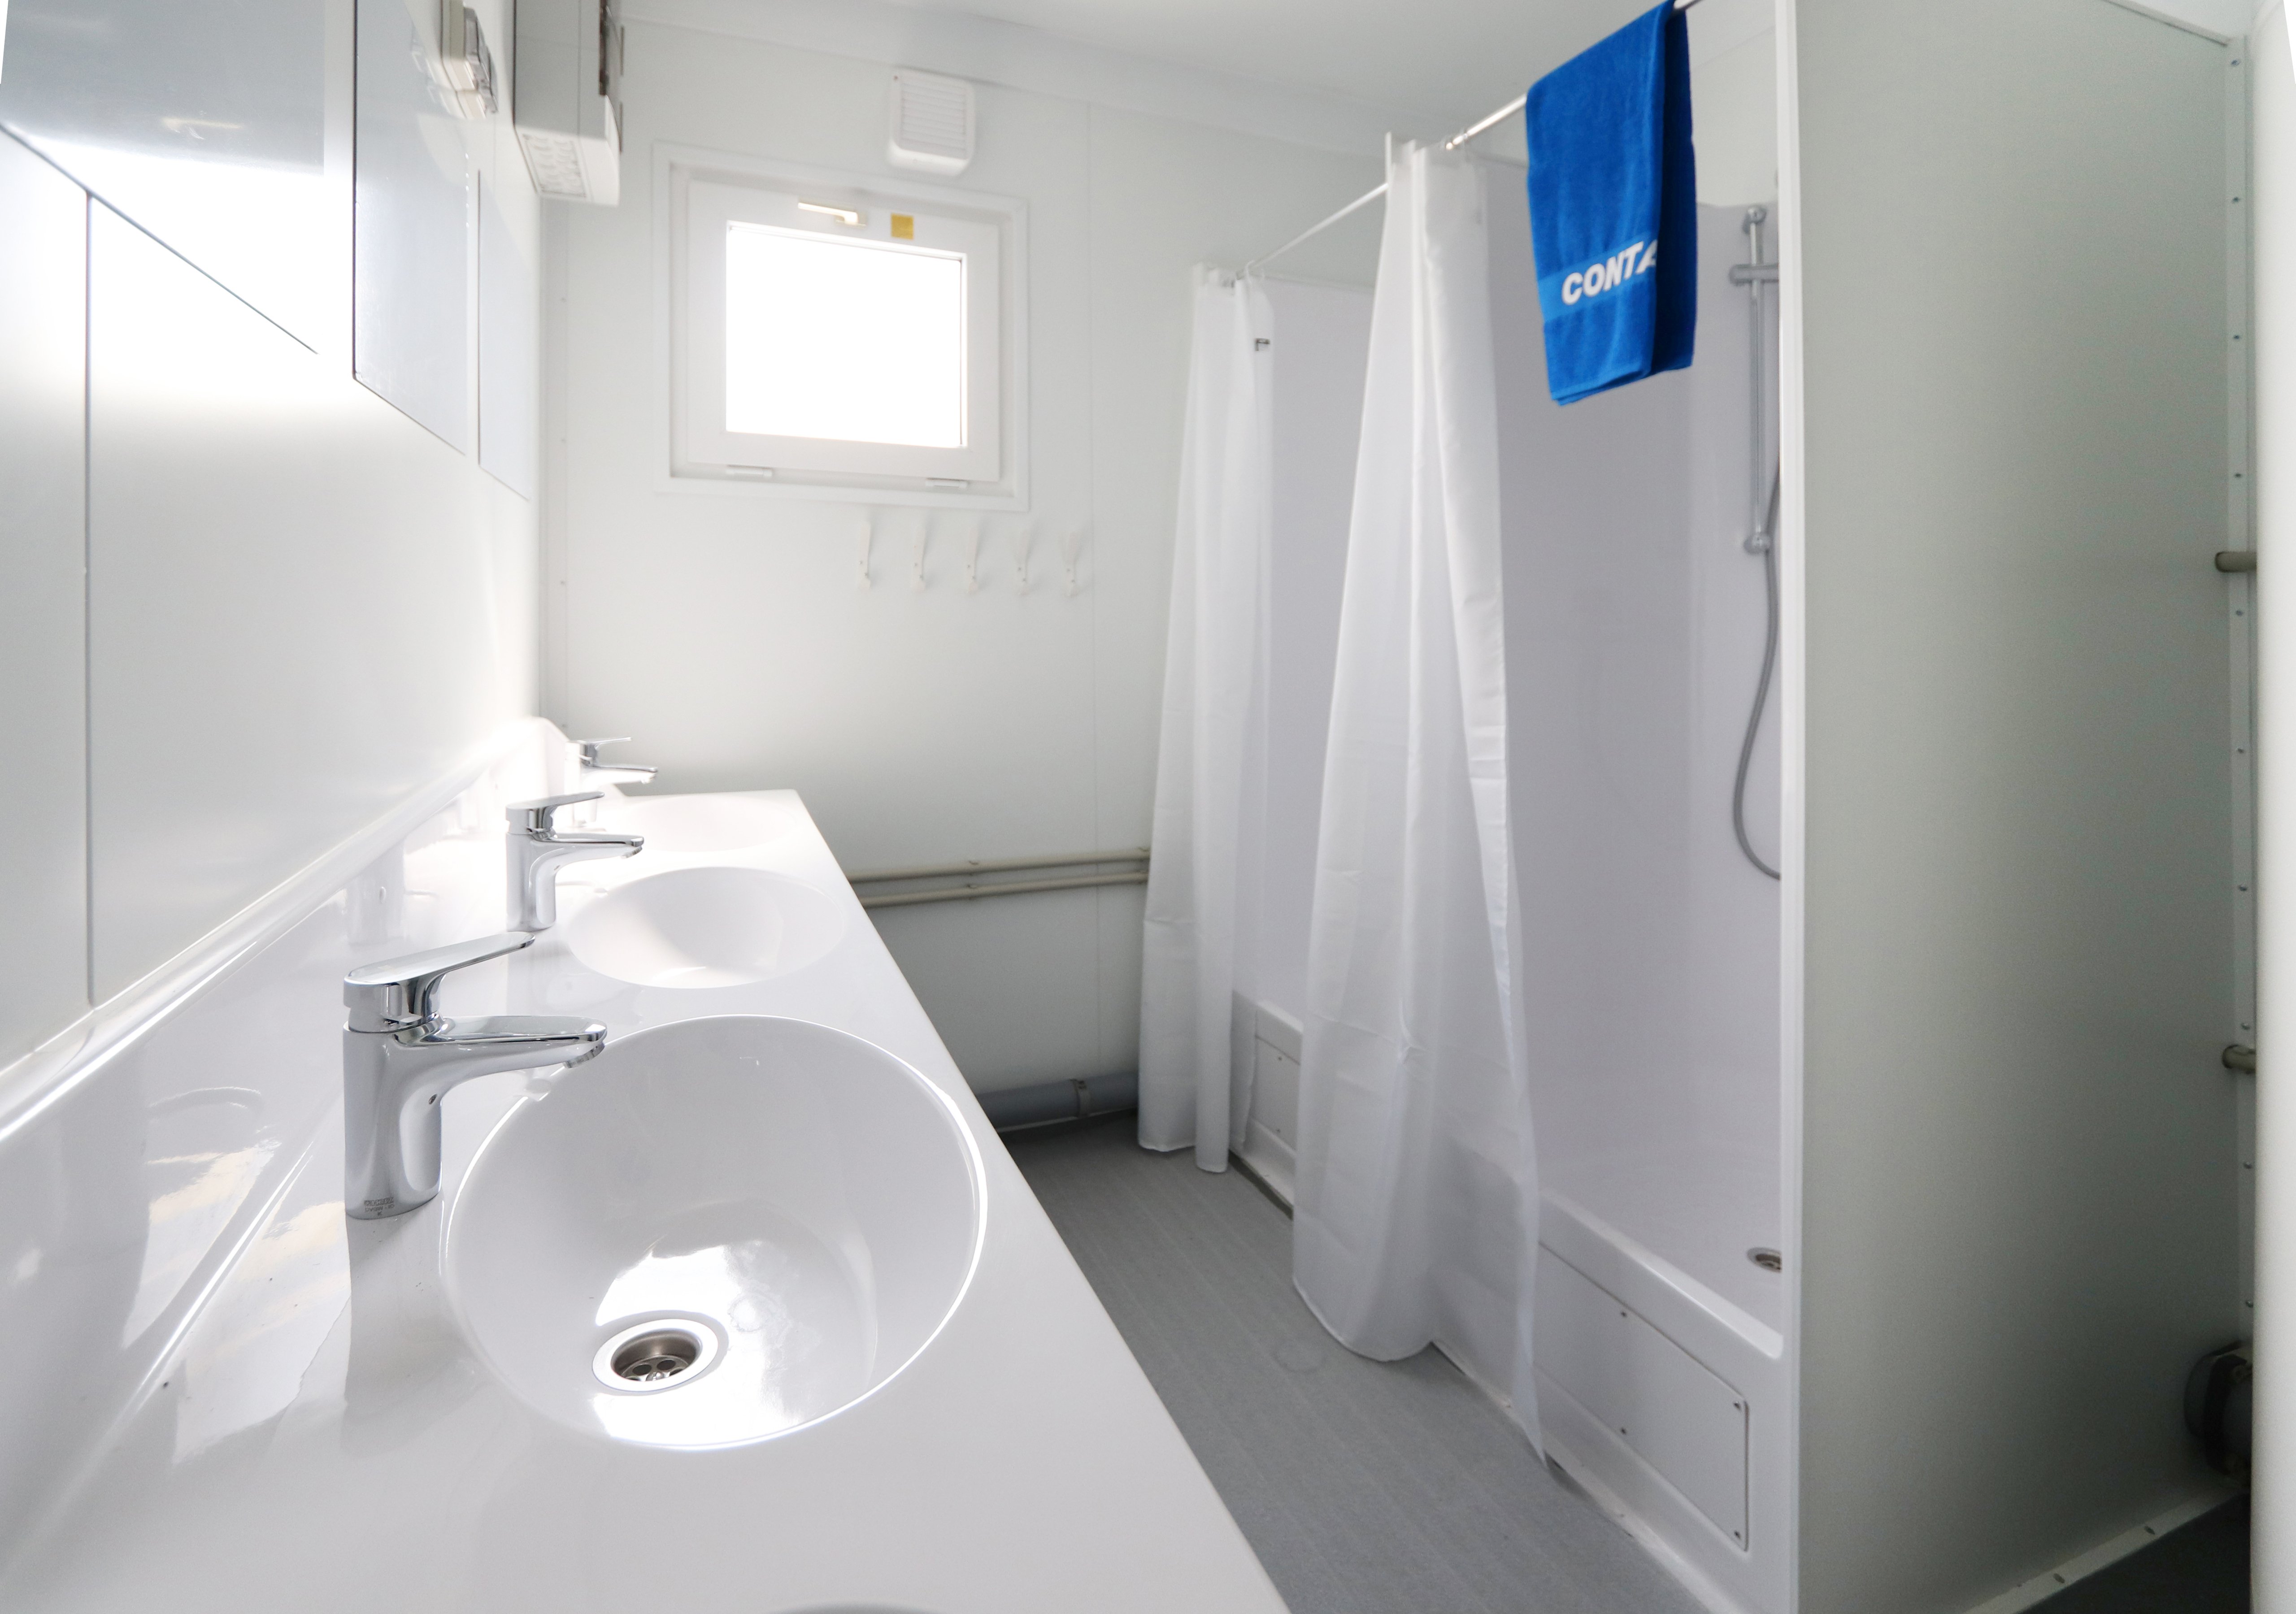 Alquilar módulos de duchas diseñados para la comodidad y la higiene